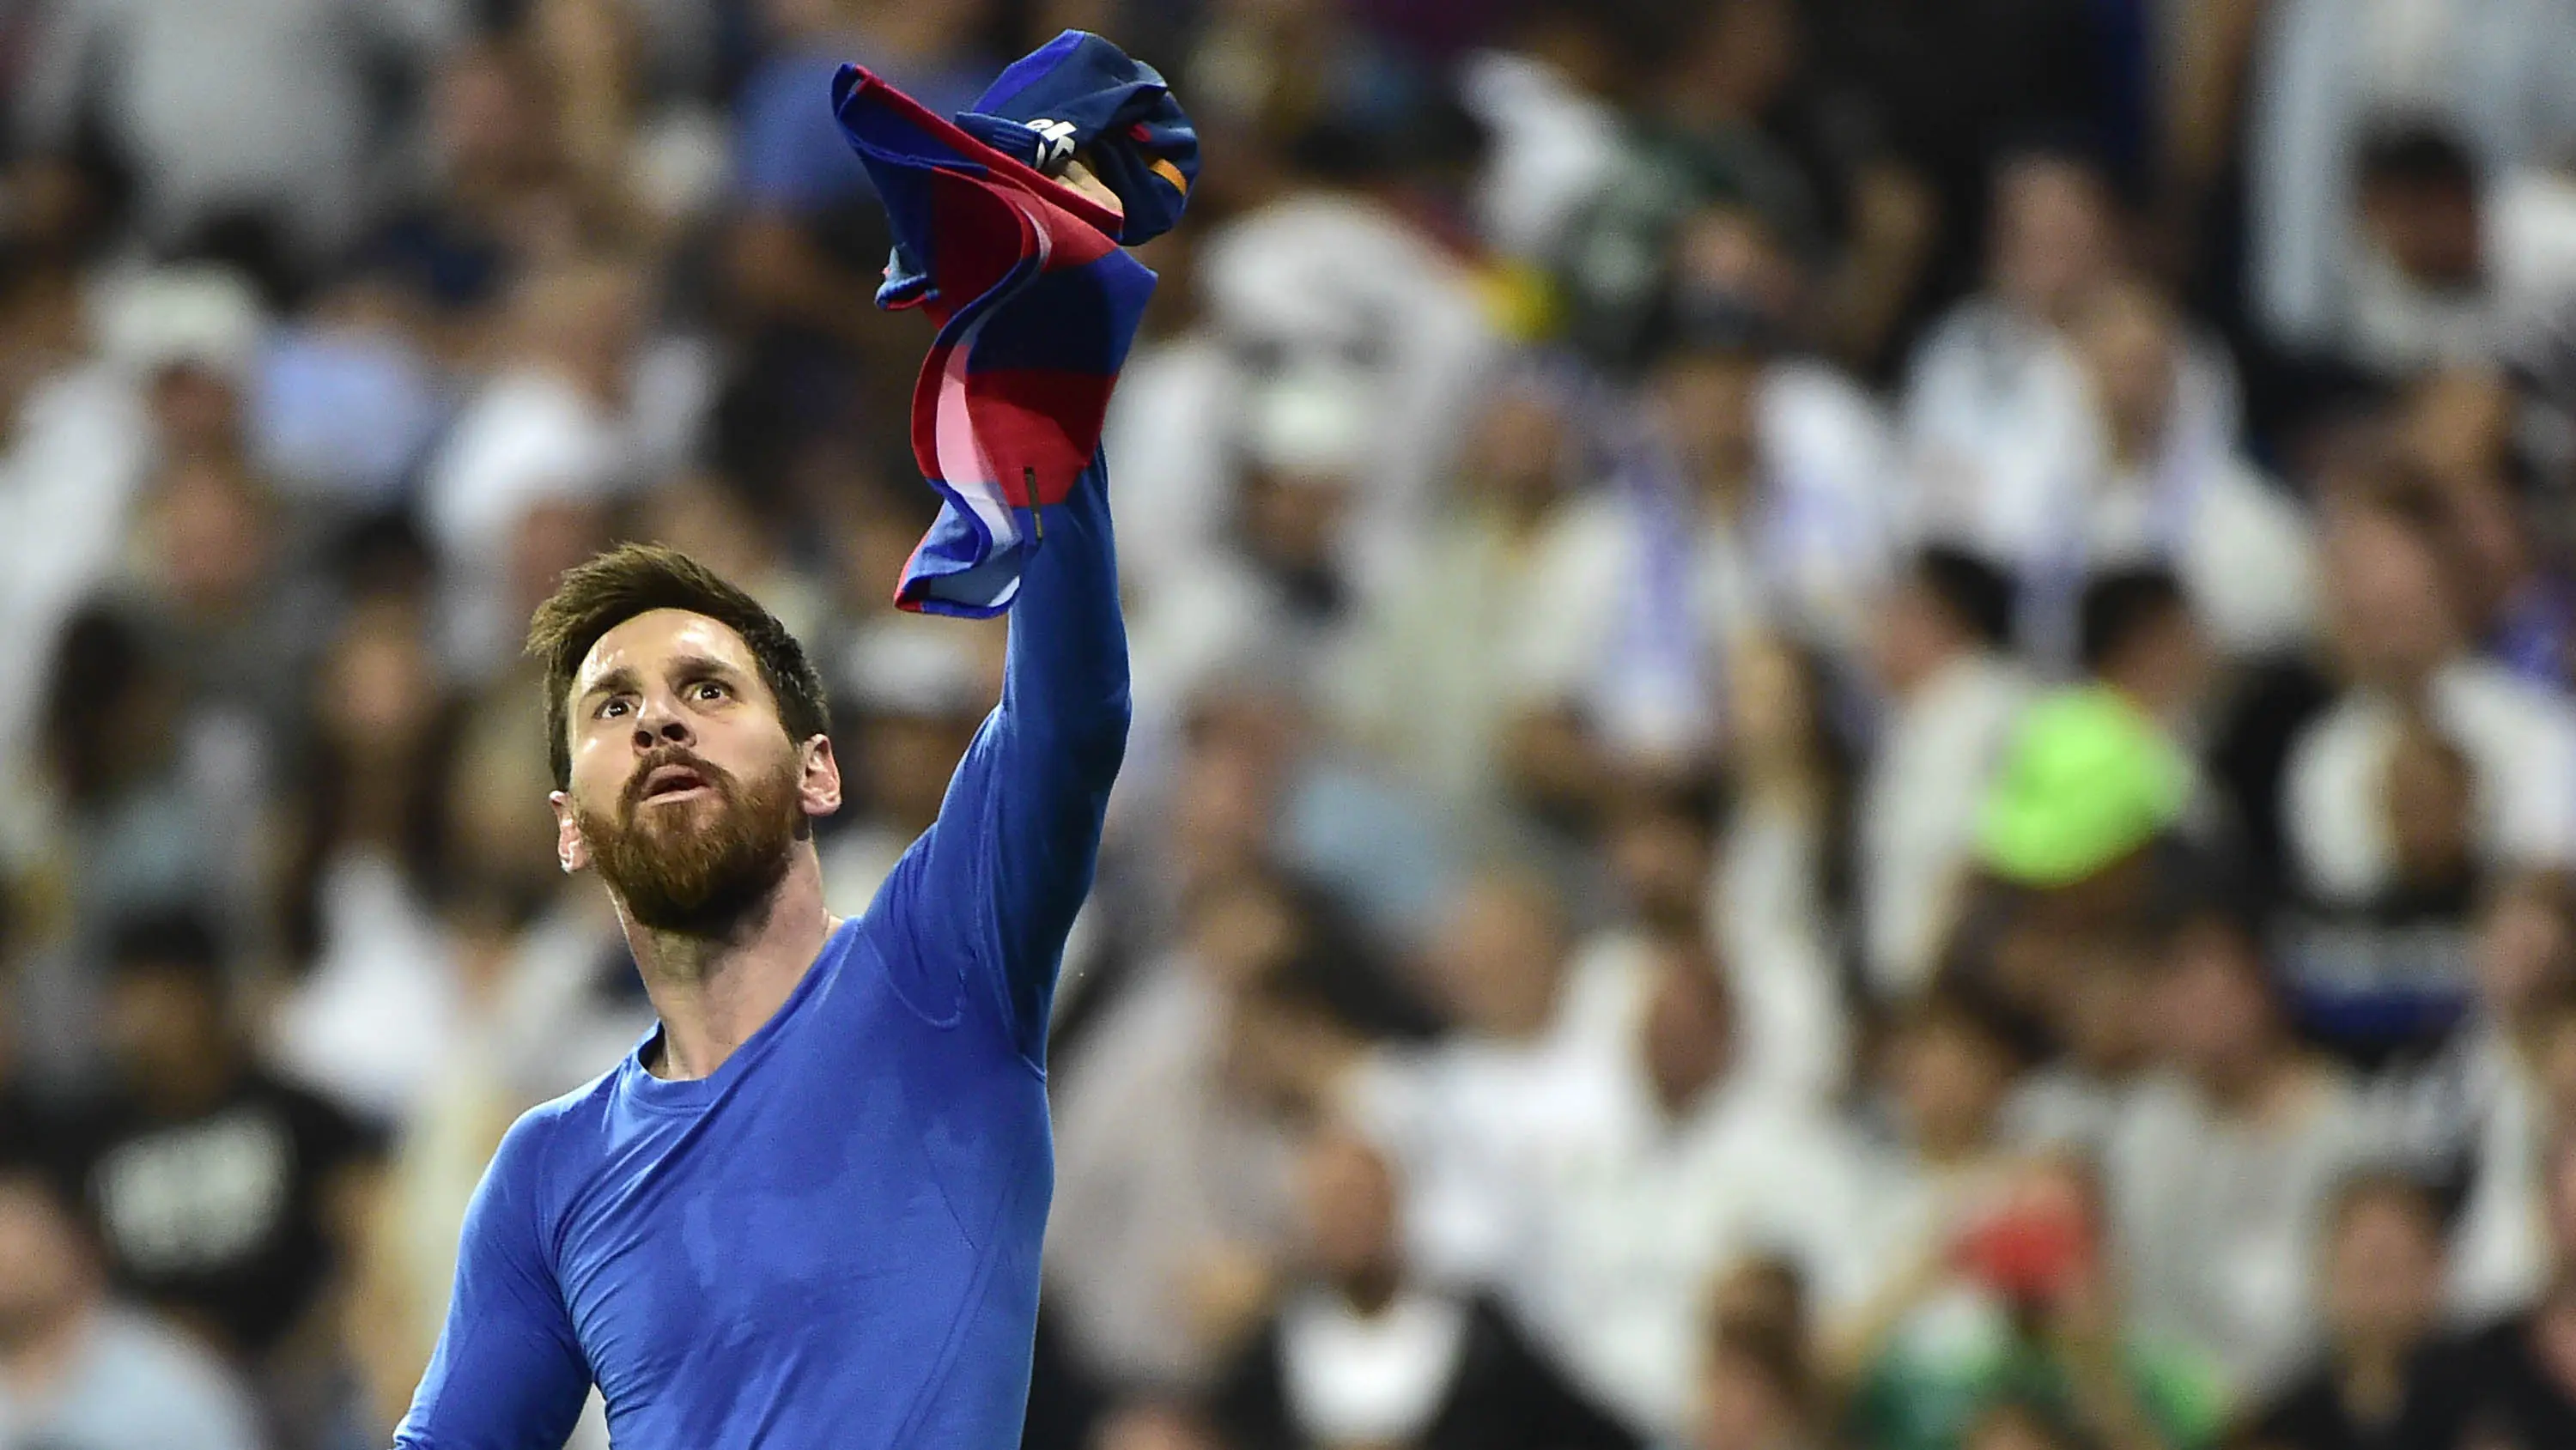 Bintang Barcelona, Lionel Messi, merayakan gol yang dicetaknya ke gawang Real Madrid pada laga La Liga Spanyol di Stadion Santiago Bernabeu, Madrid, Minggu (23/4/2017). (AFP/Gerard Julien)